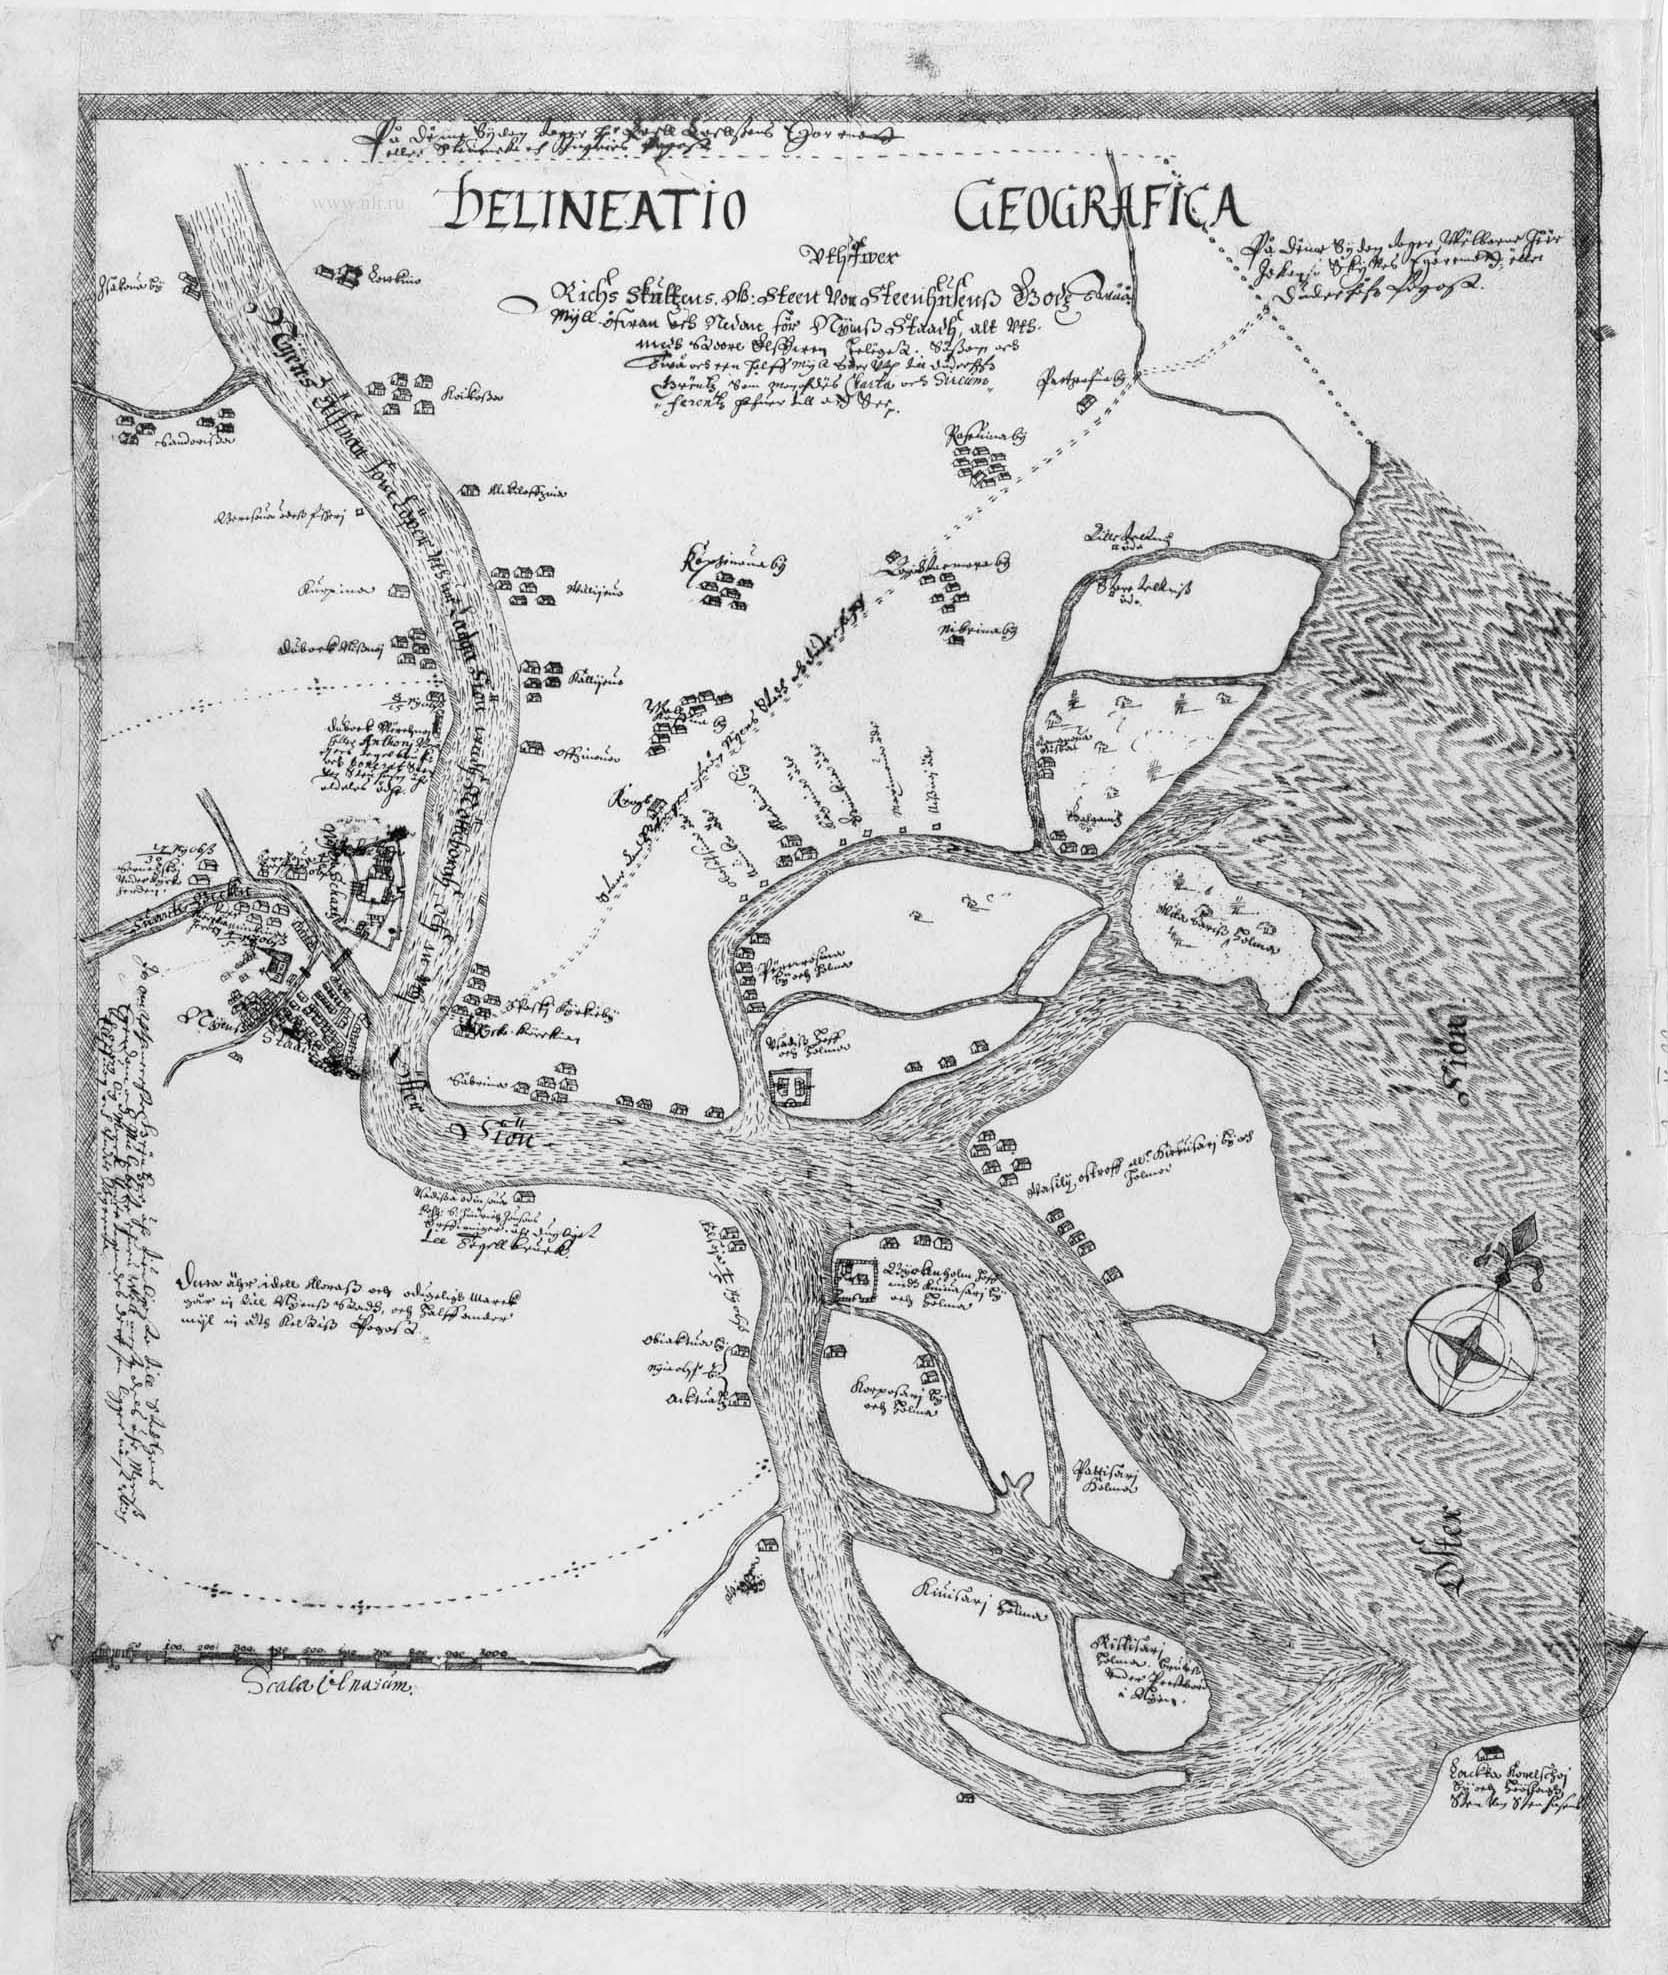 Географический чертеж земельного имущества генерального ревизора Стена фон Стенхаузена. 1643 год.